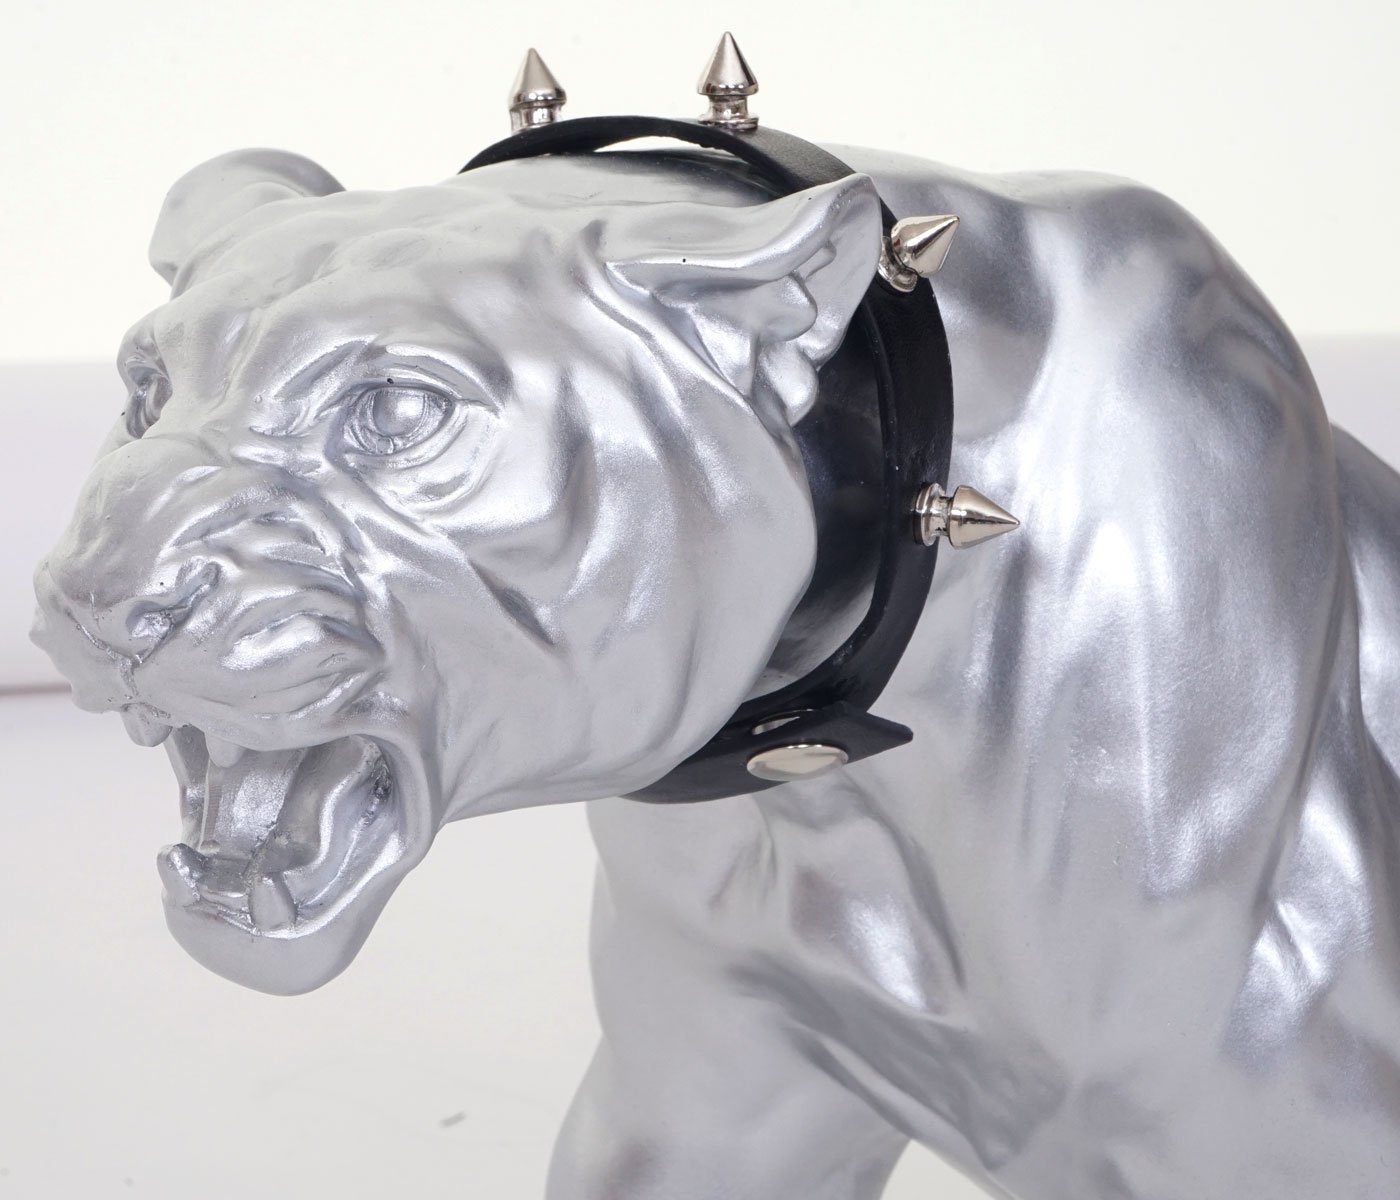 MCW Tierfigur Panther, Indoor/Outdoor-geeignet, Inkl. Halsband Witterungsbeständig, Frostbeständig bis -10° C, silberfarben